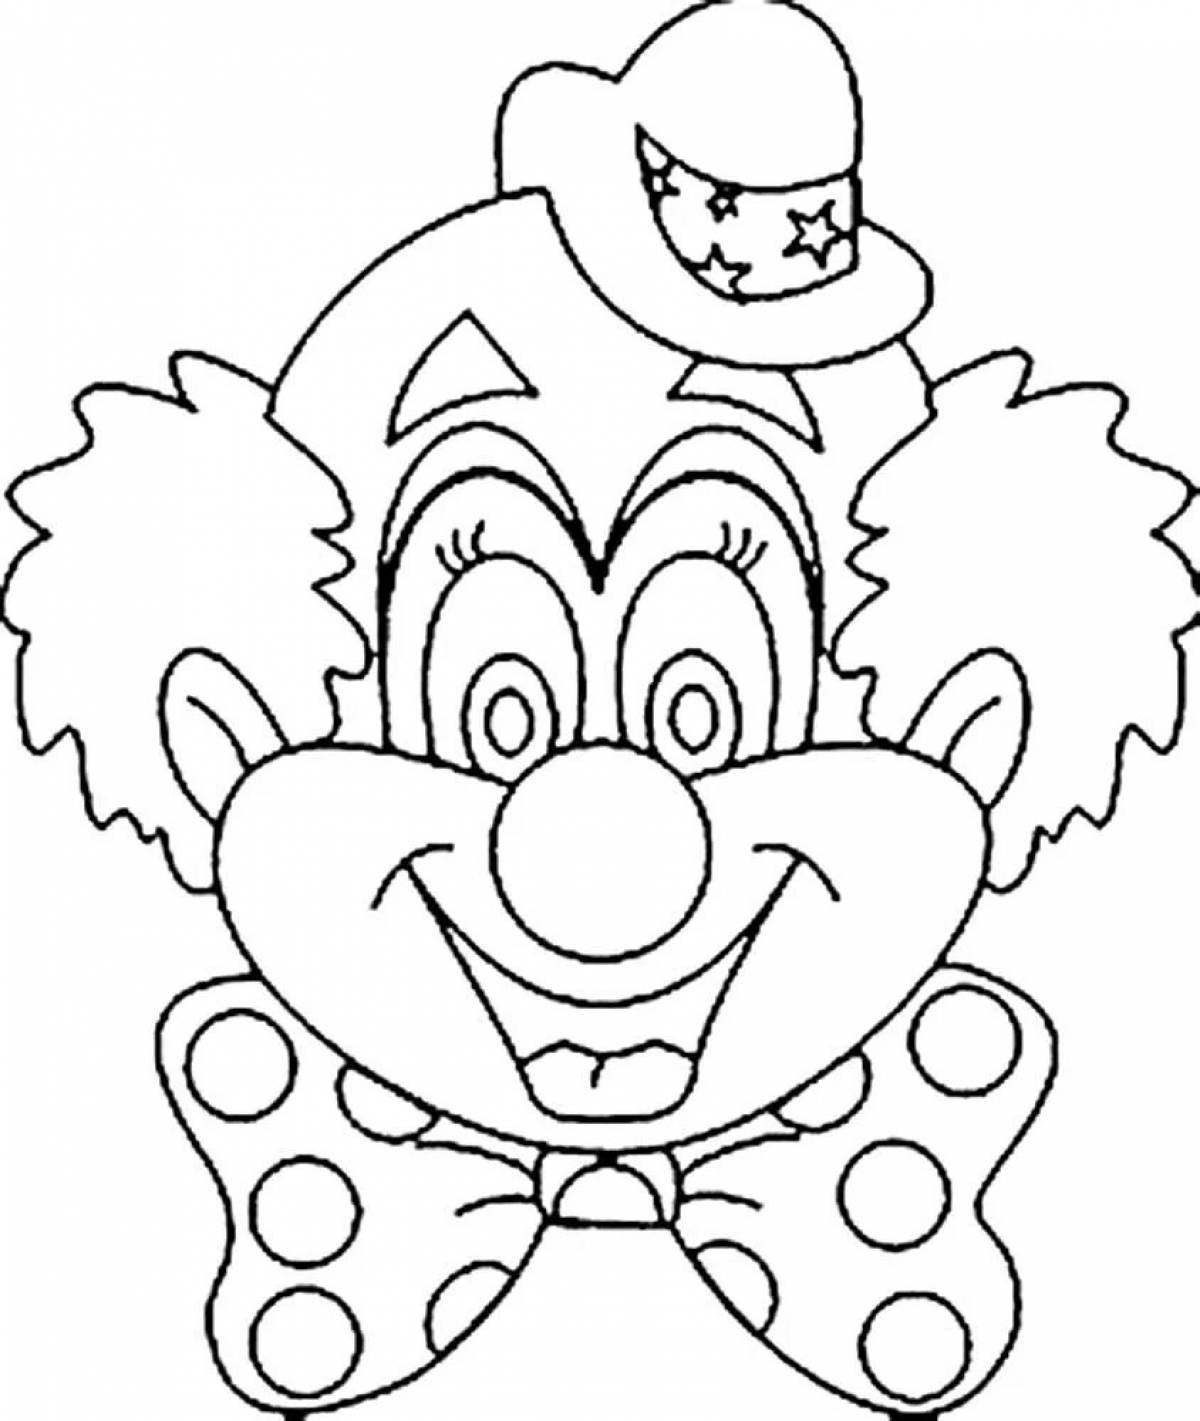 Маска клоуна для детей распечатать. Клоун раскраска. Лицо клоуна раскраска. Клоун раскраска для детей. Маска клоун раскраска для детей.